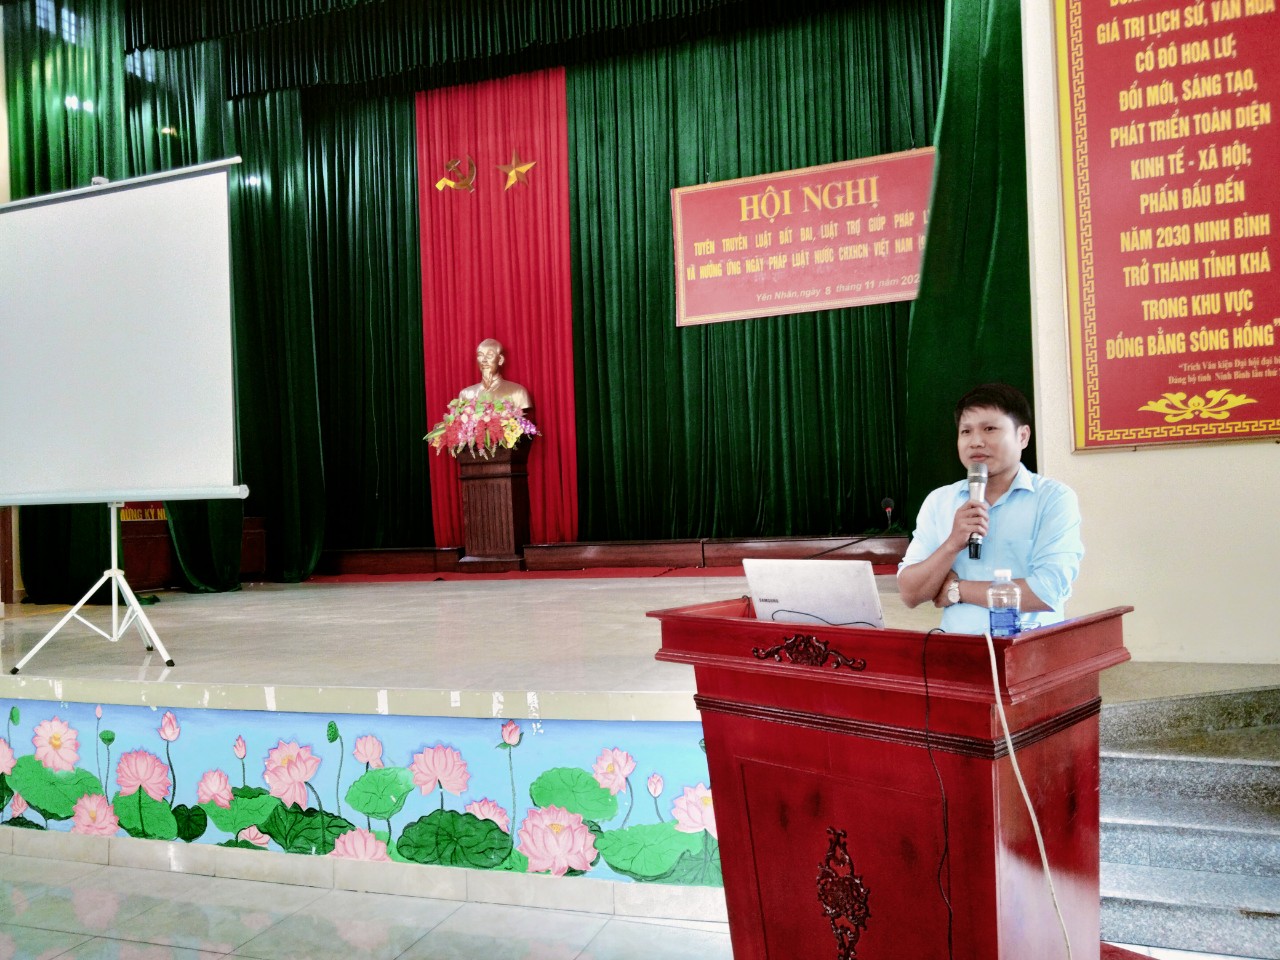 Truyền thông về trợ giúp pháp lý, tư vấn pháp luật cho người dân trên địa bàn xã Yên Nhân, huyện Yên Mô